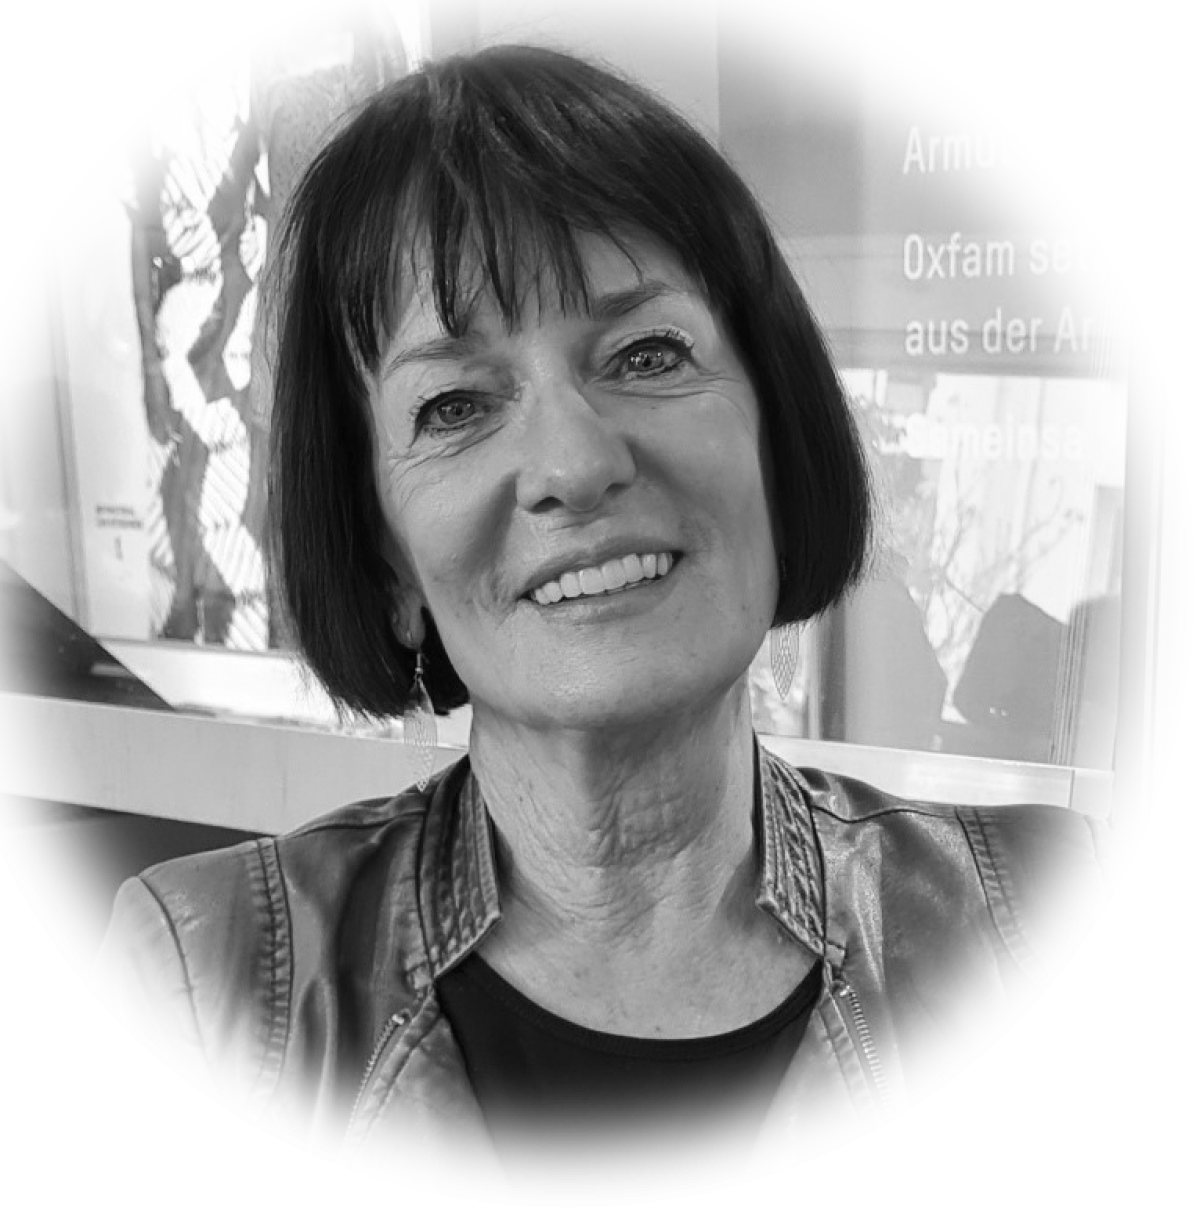 Elke Klebach arbeitet ehrenamtlich im Oxfam Shop Frankfurt-Bockenheim